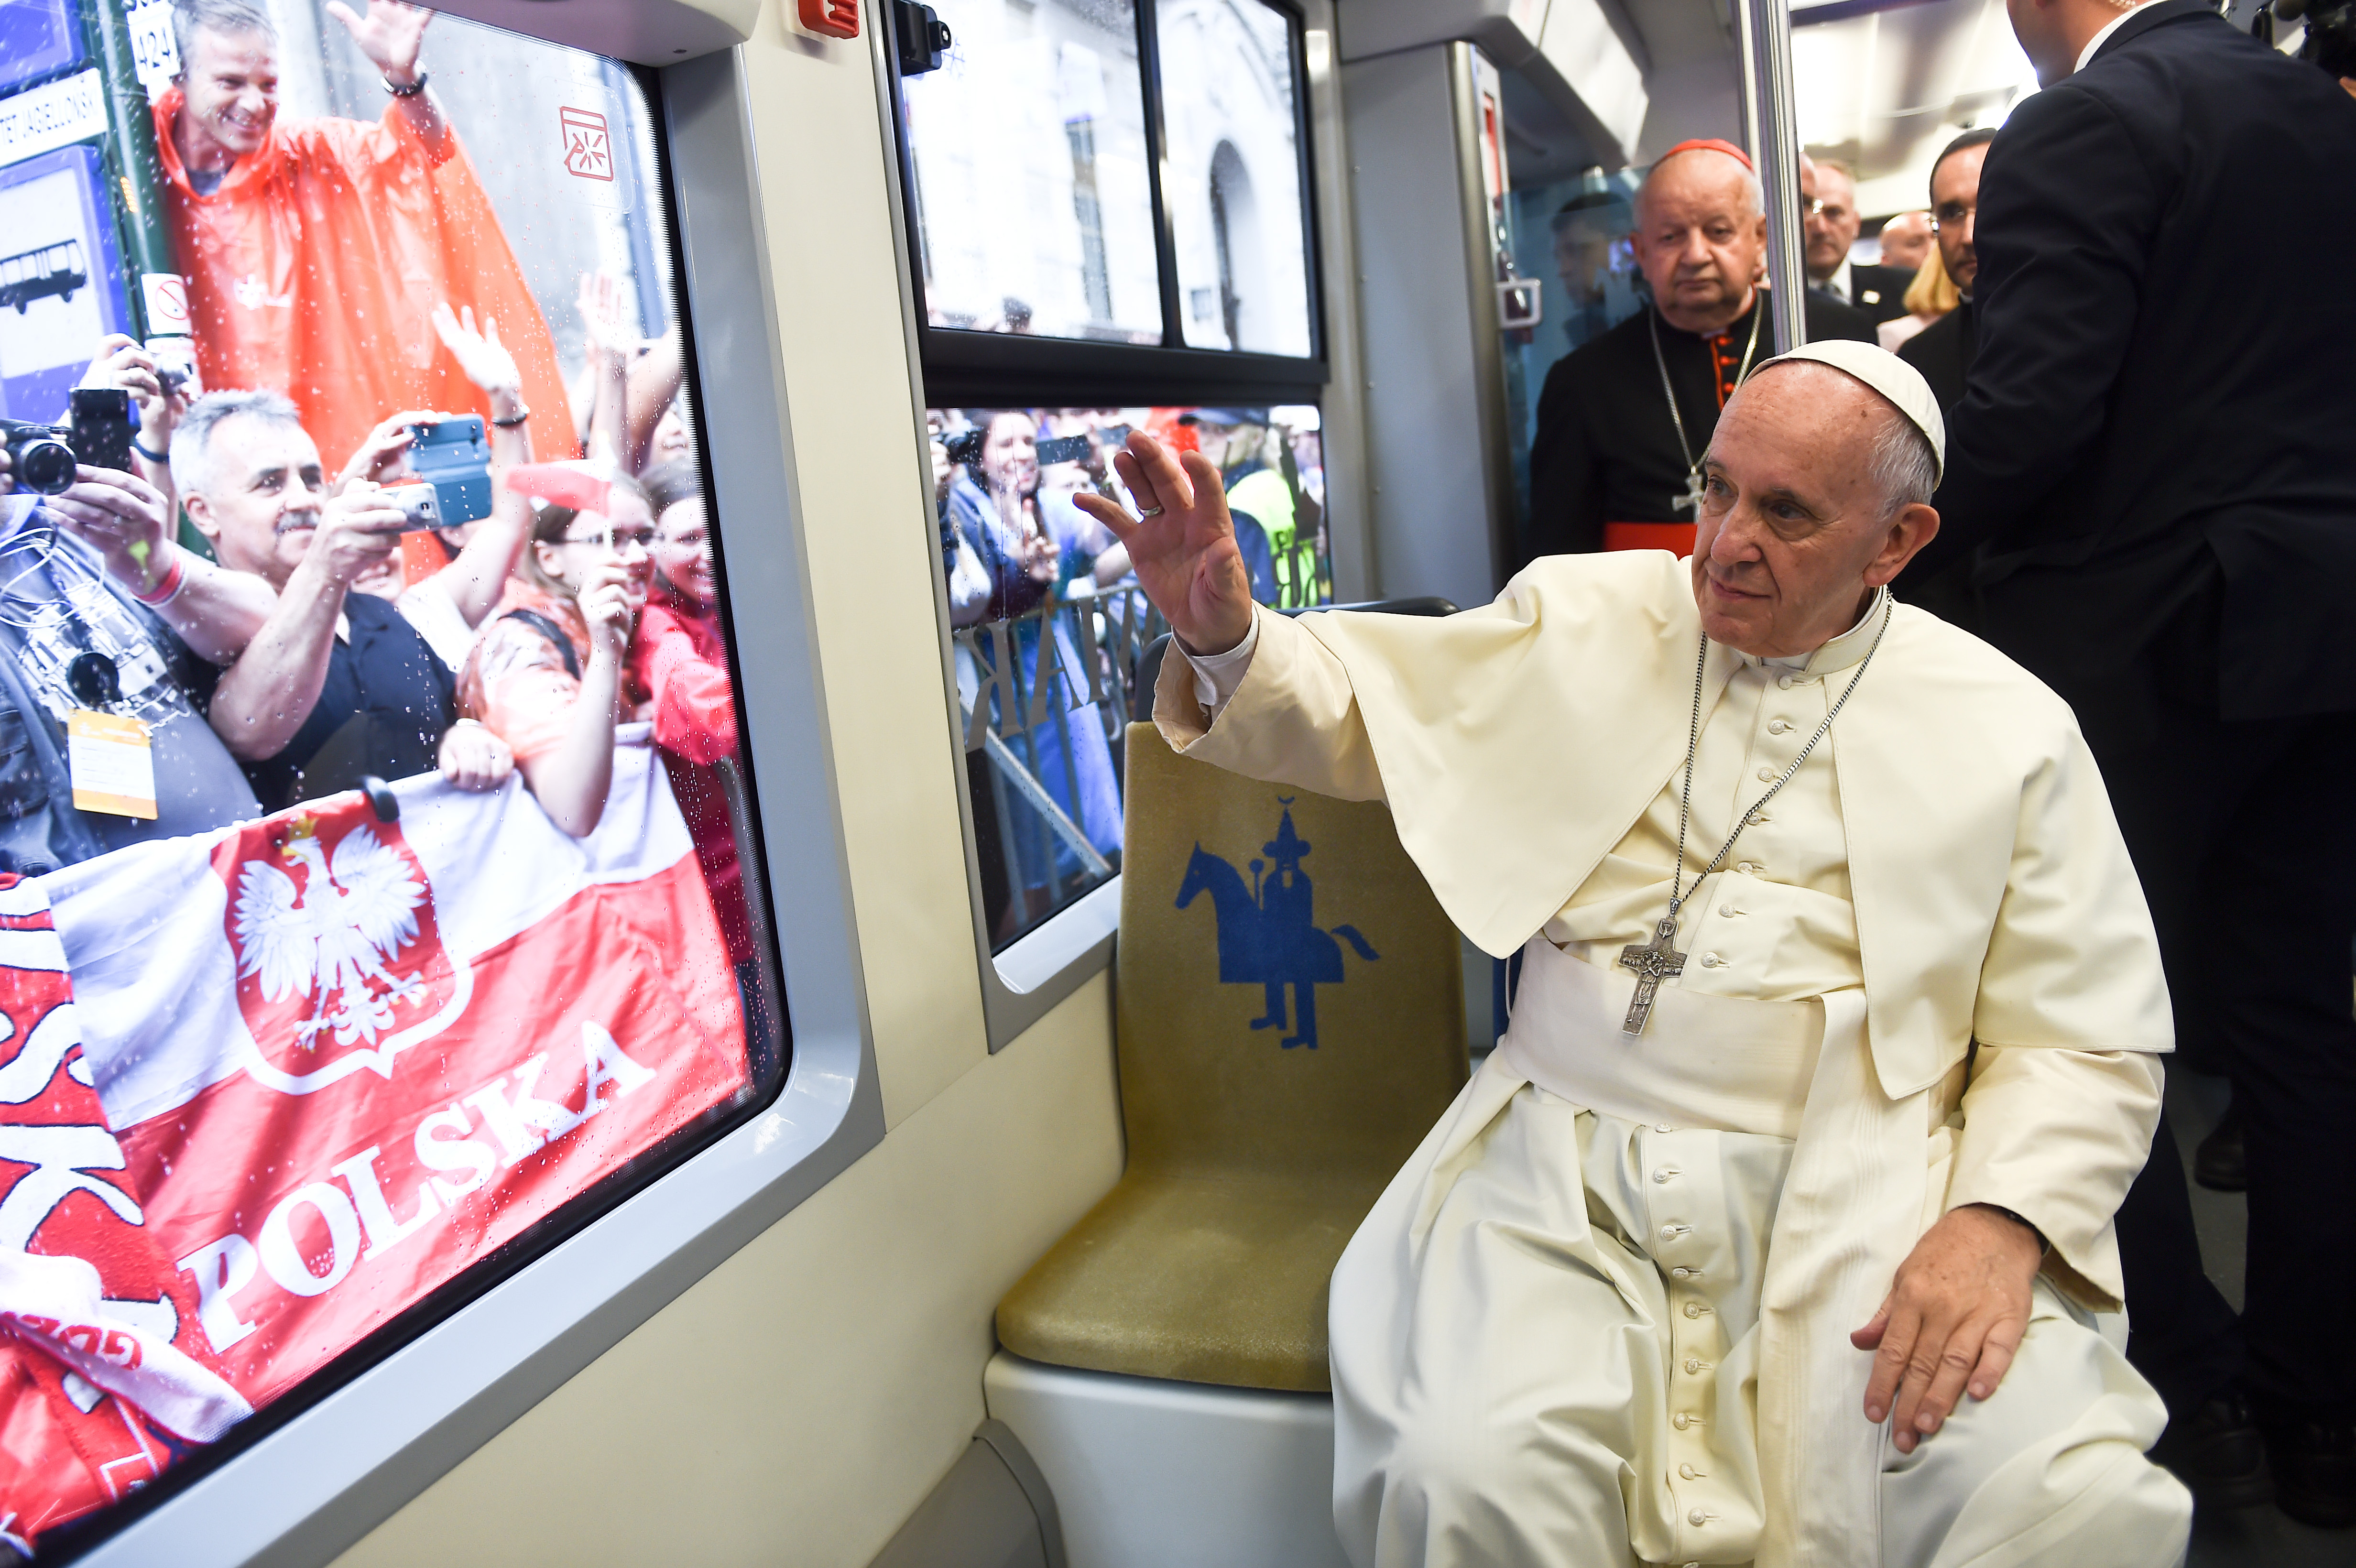 Pope in tram